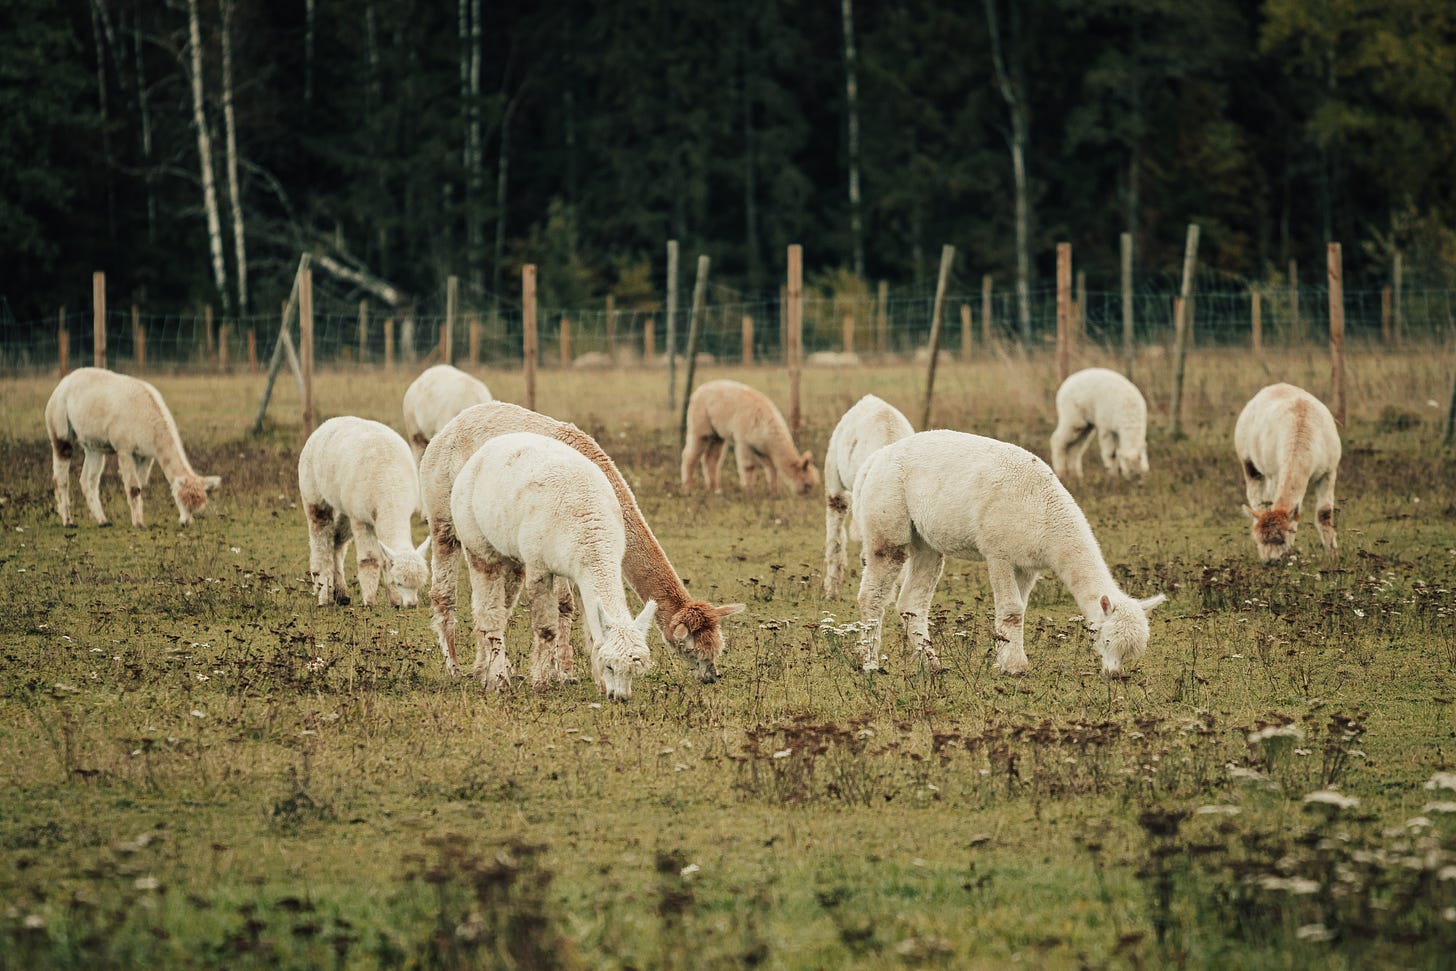 Alpacas grazing in a field